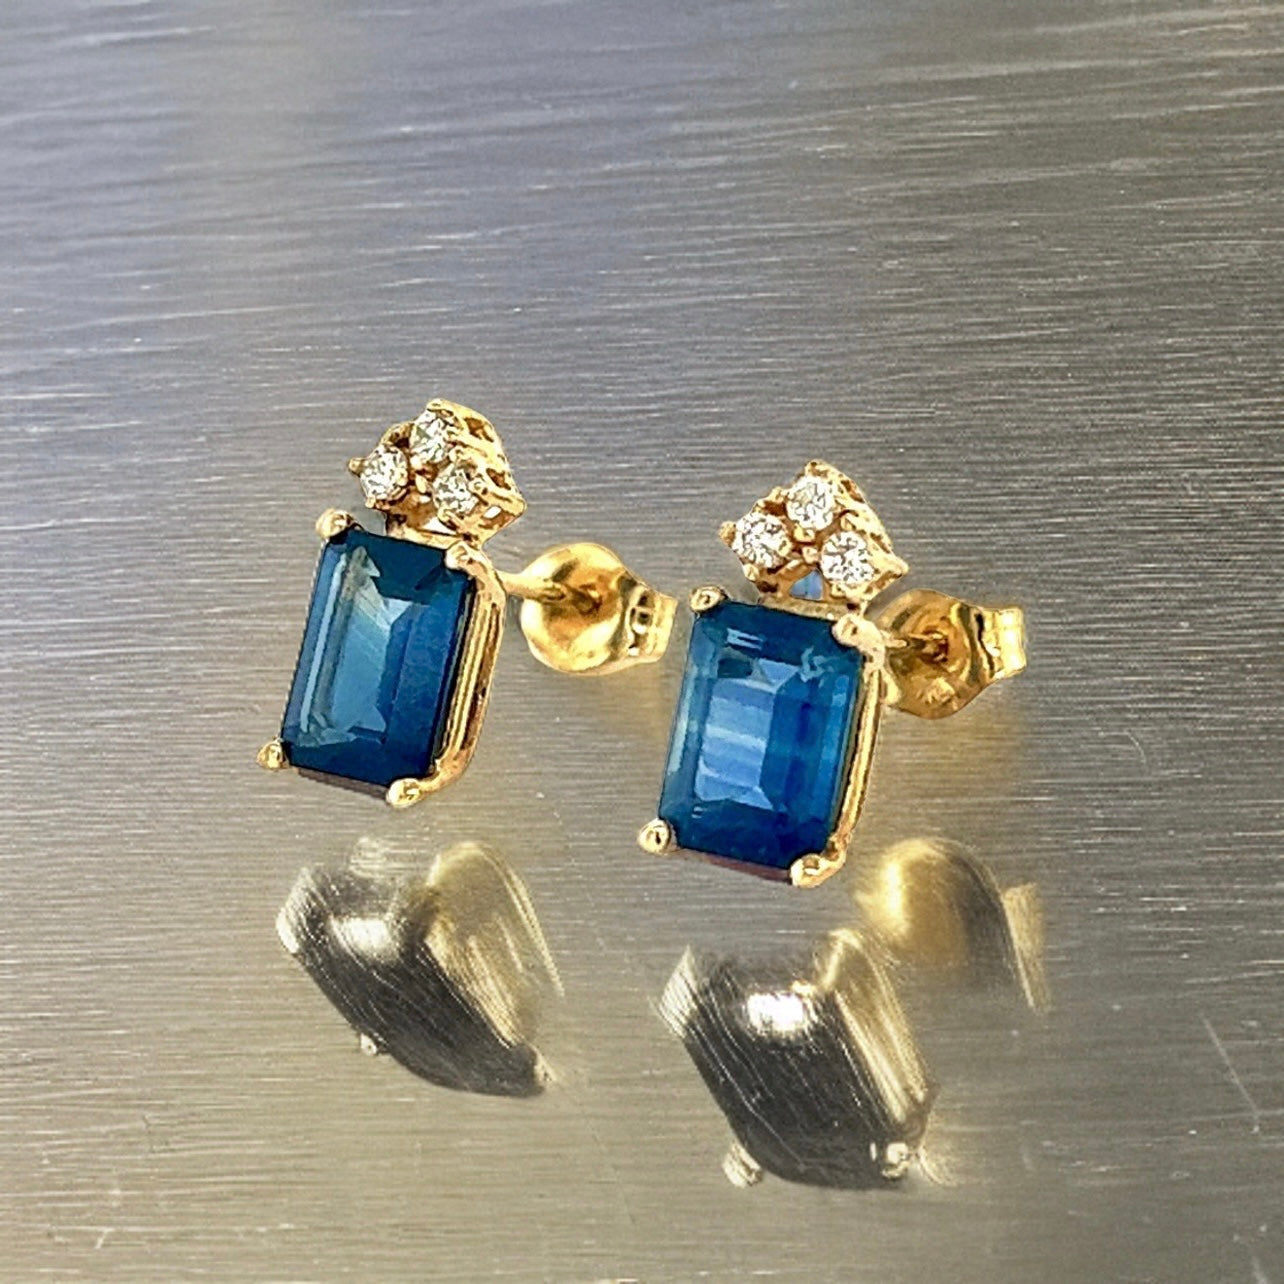 Natural Sapphire Diamond Earrings 14k Gold 2.14 TCW Certified $2,950 121247 - Certified Fine Jewelry